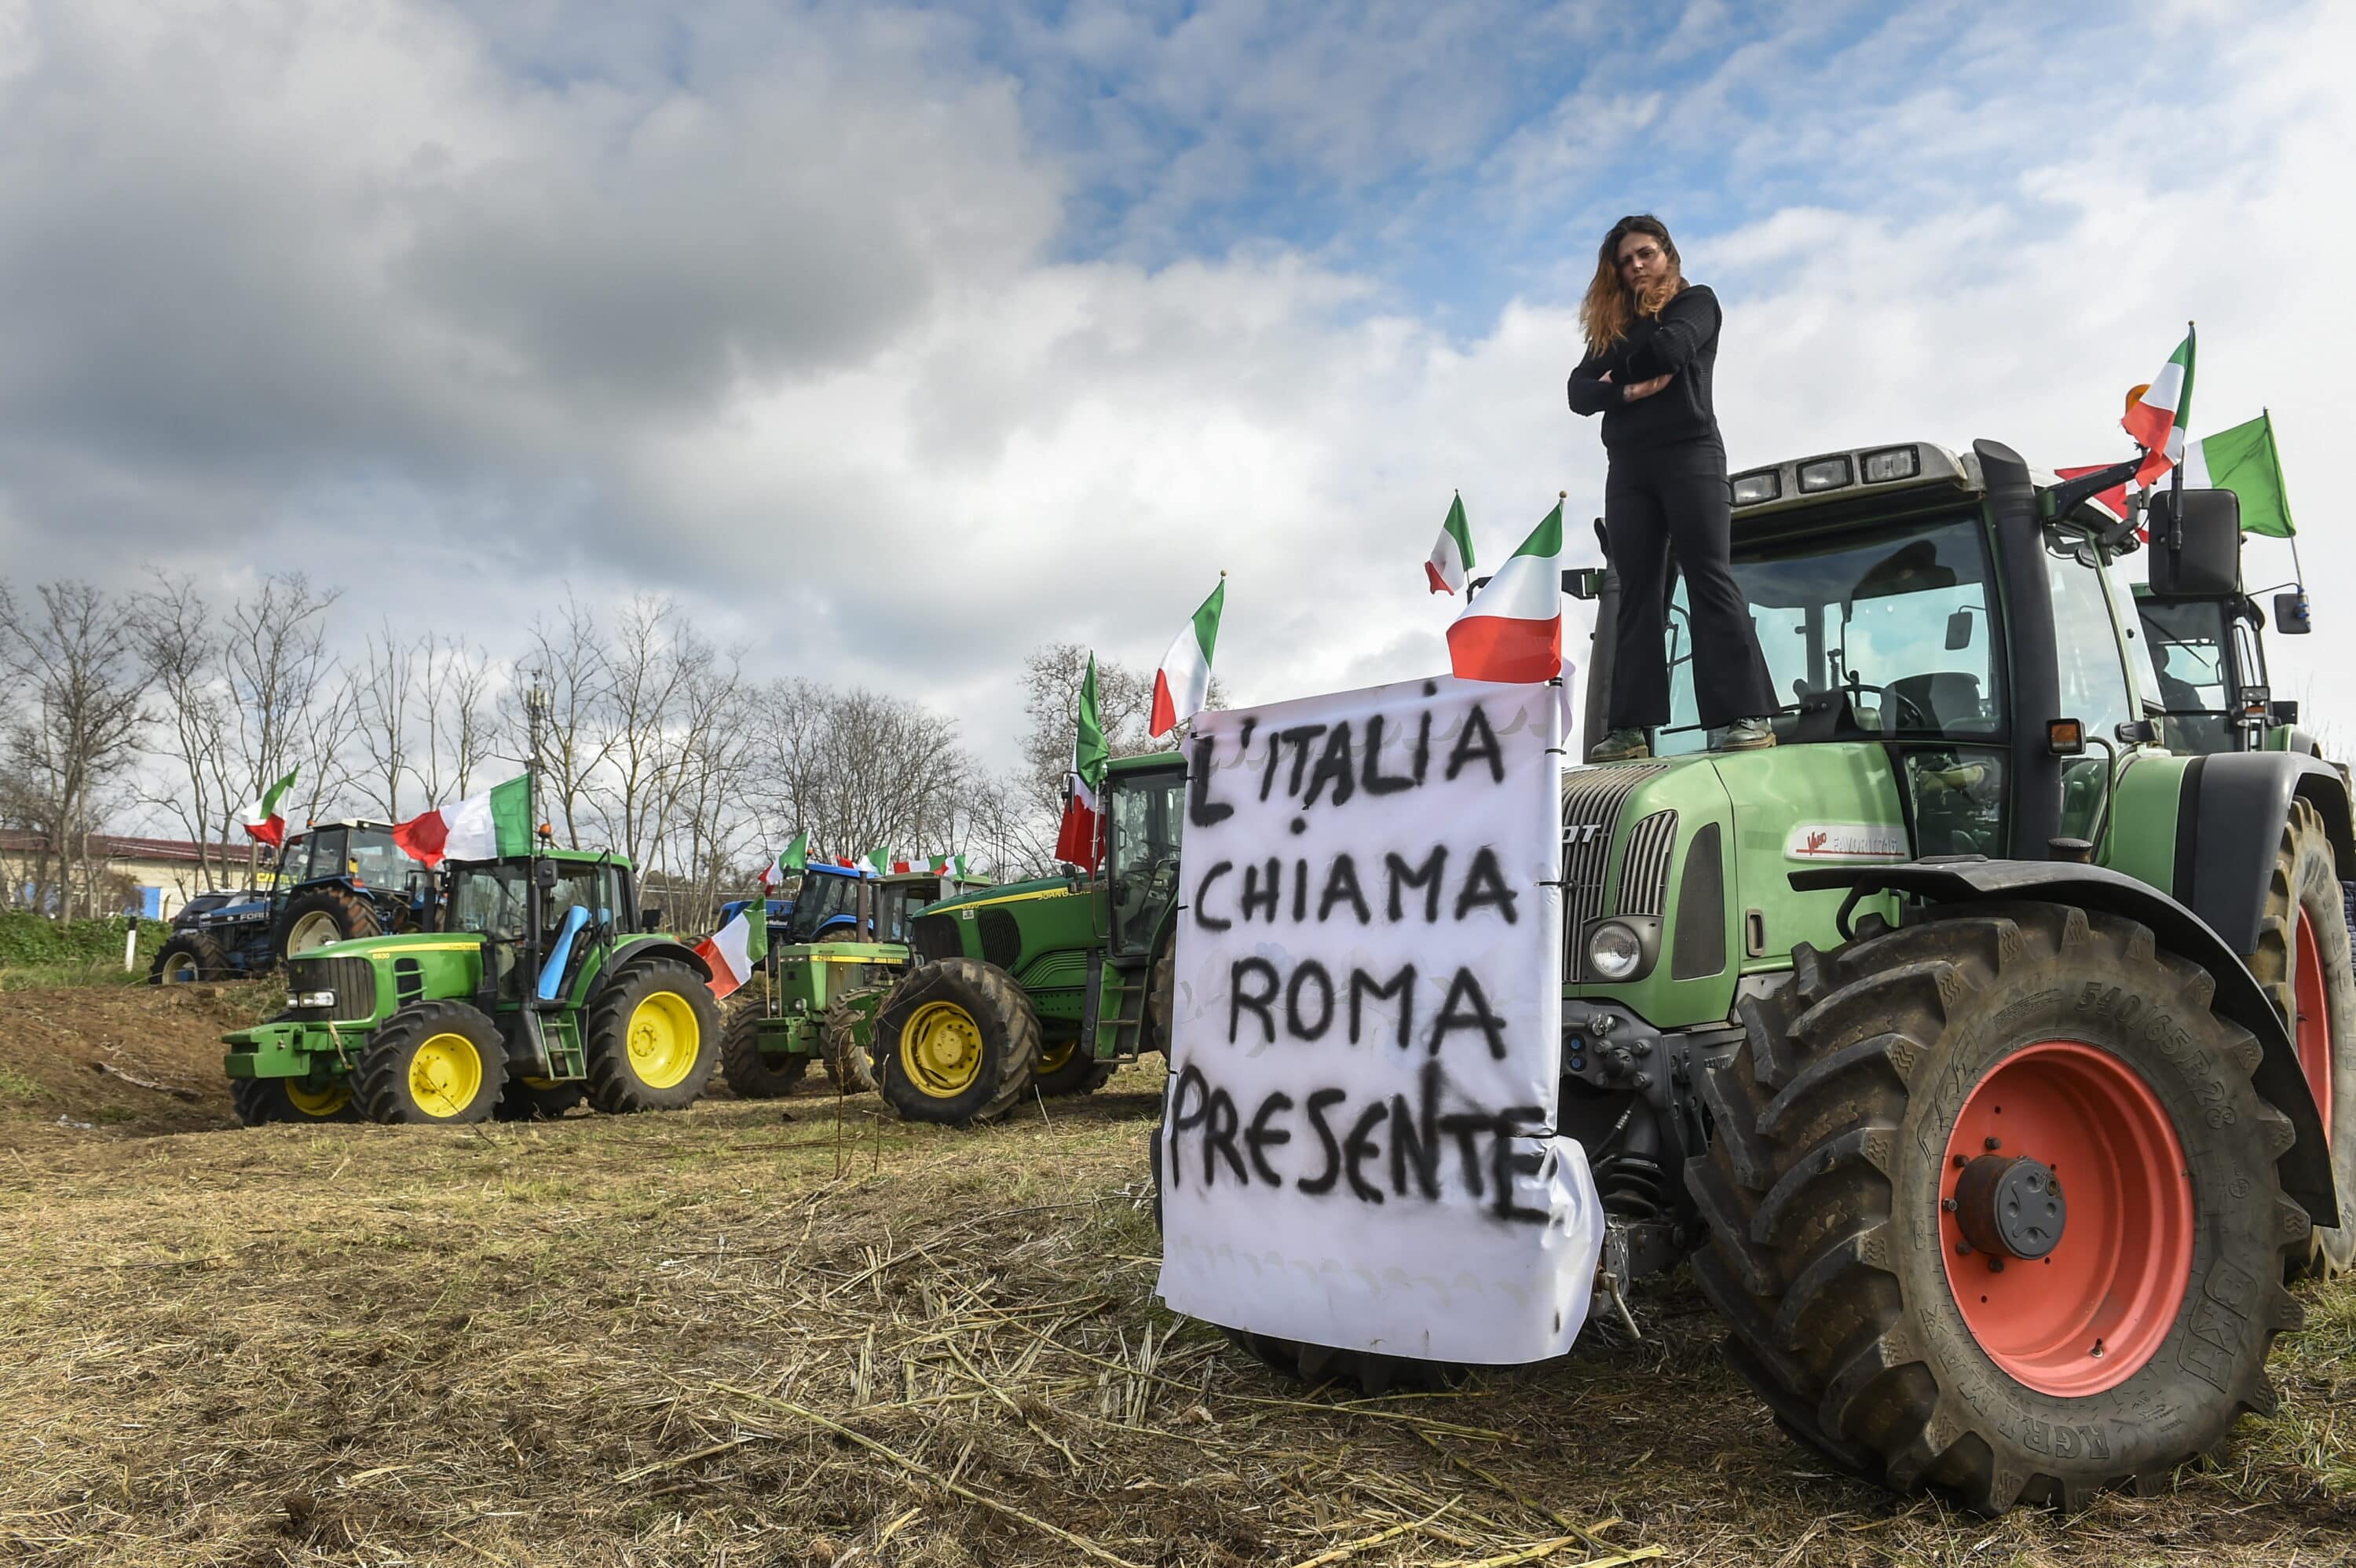 Protesta dei trattori, parte la sfilata per il centro di Roma: 4 mezzi in marcia verso San Giovanni